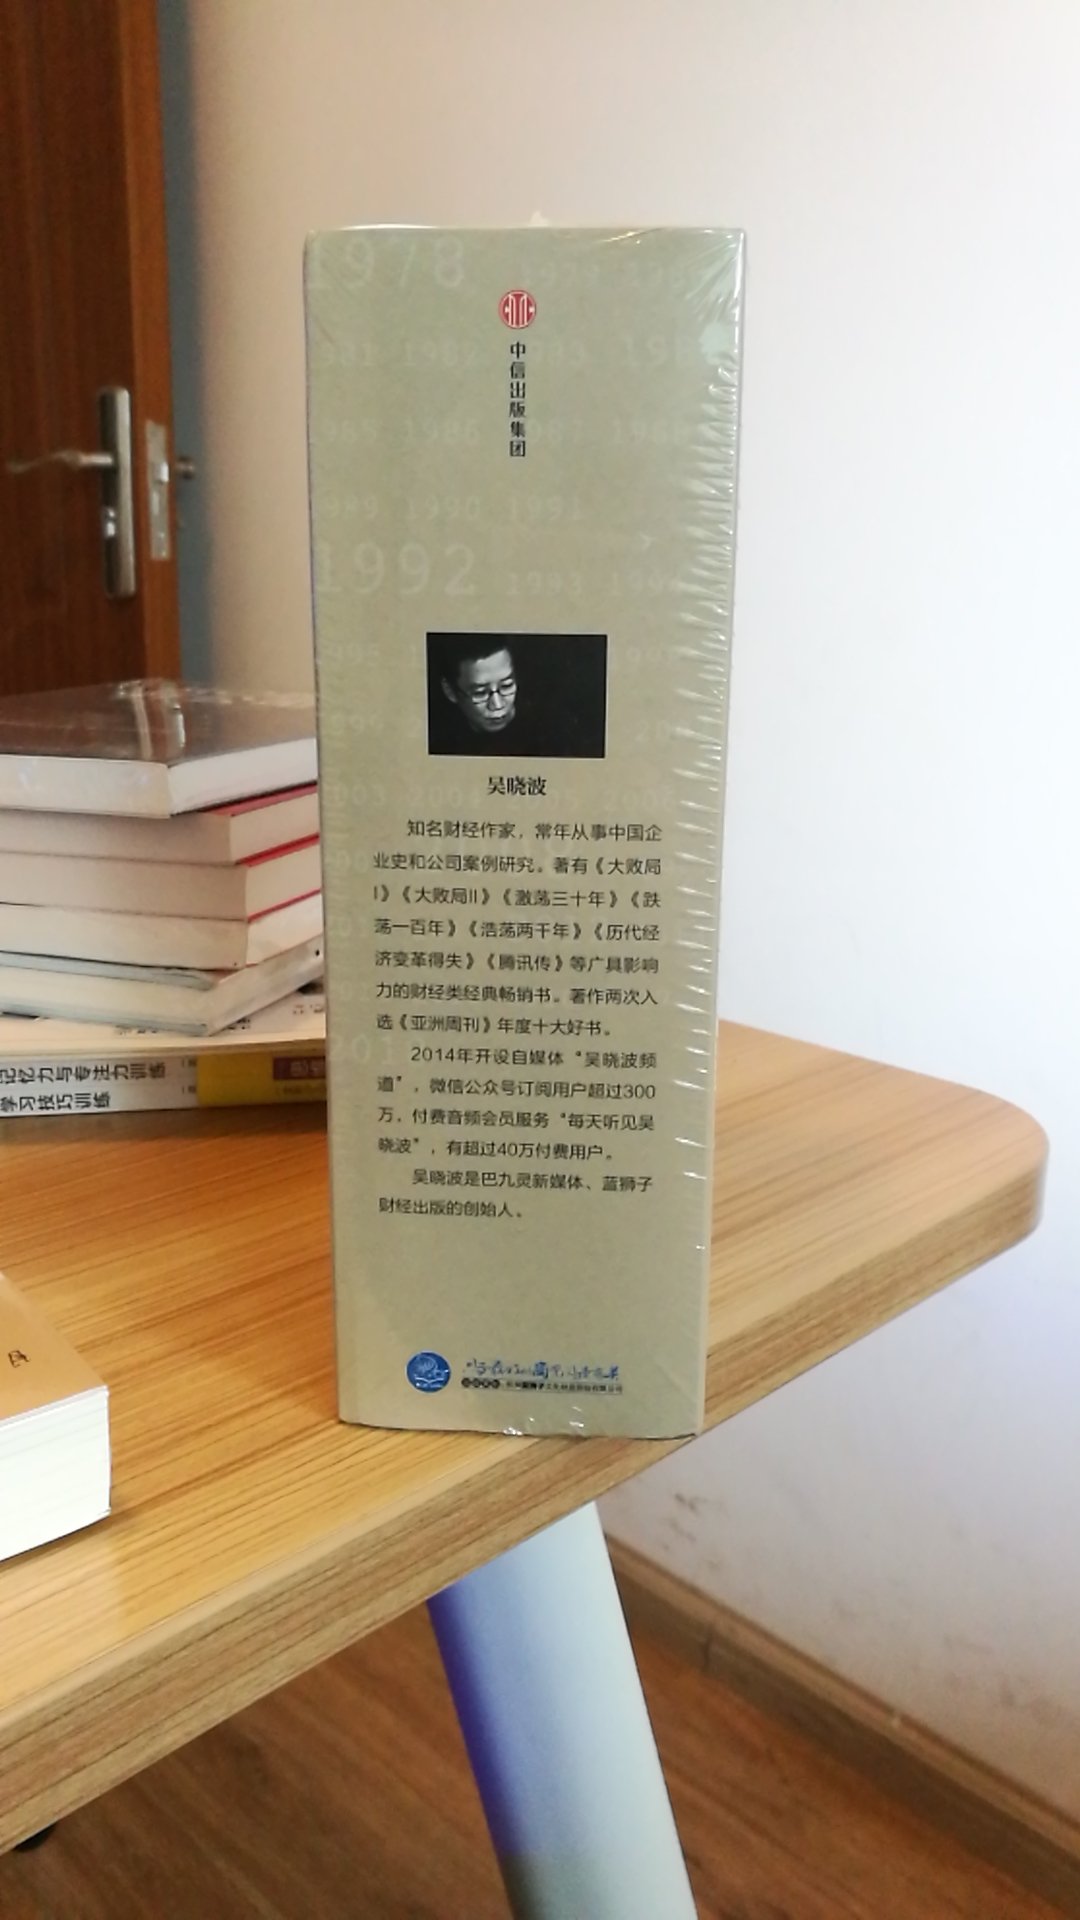 一直想读吴老师眼中的中国企业史，终于抽空出来了。书的包装精美，应该是正品。期待这次阅读旅程！